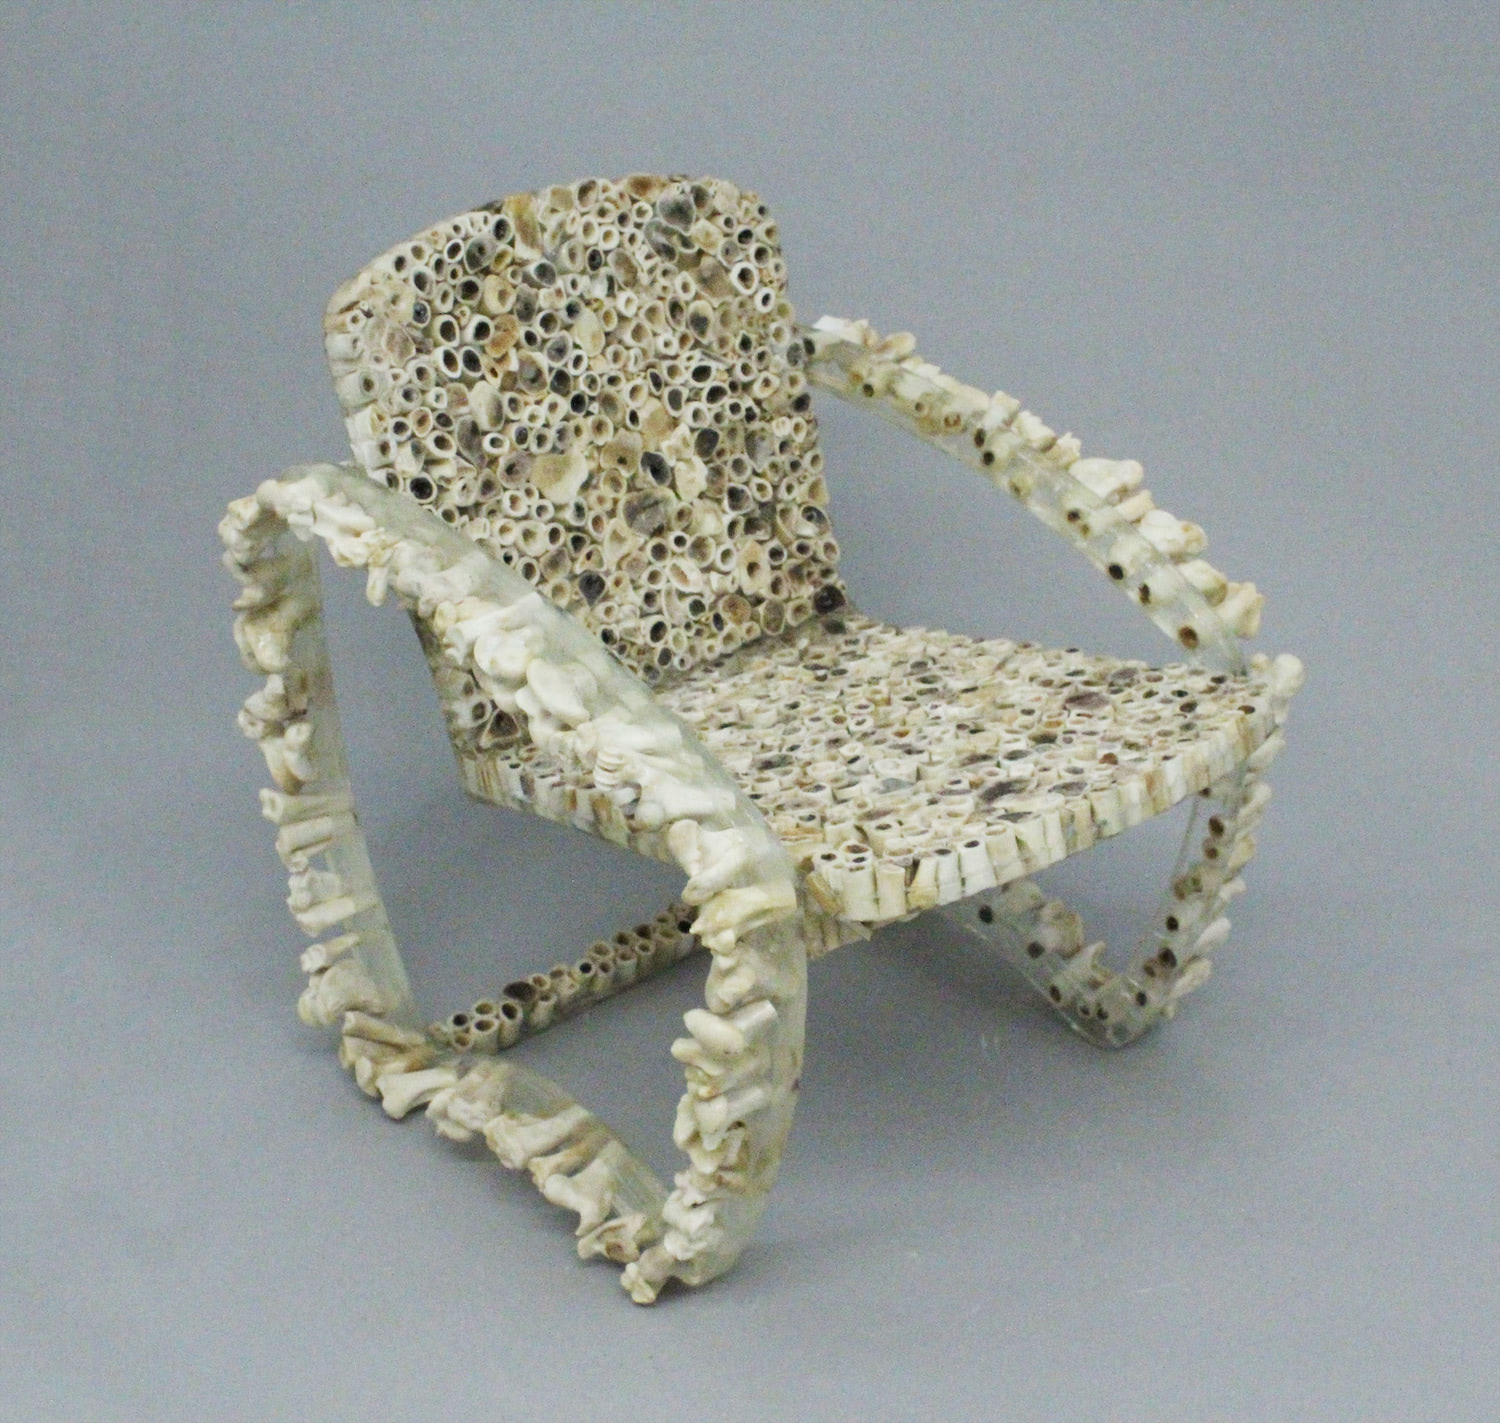 The Bone Chair